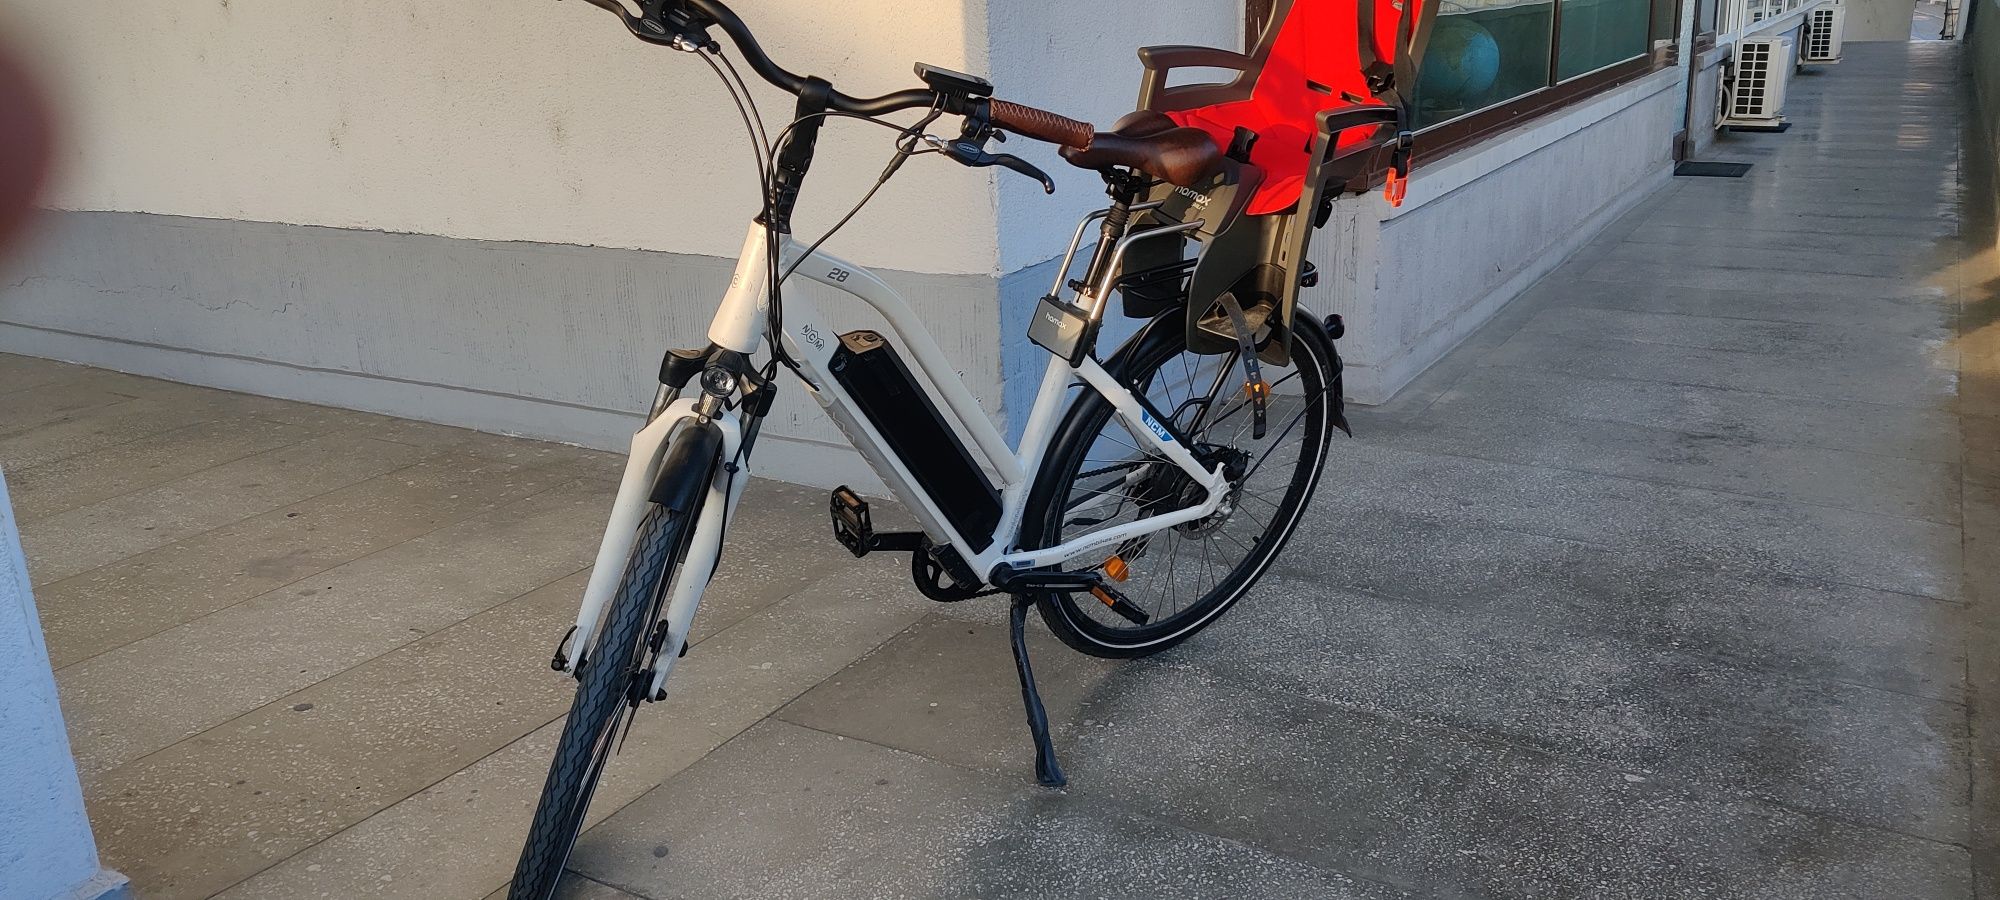 Bicicleta Electrica 48v / NCM Milano / 120 km